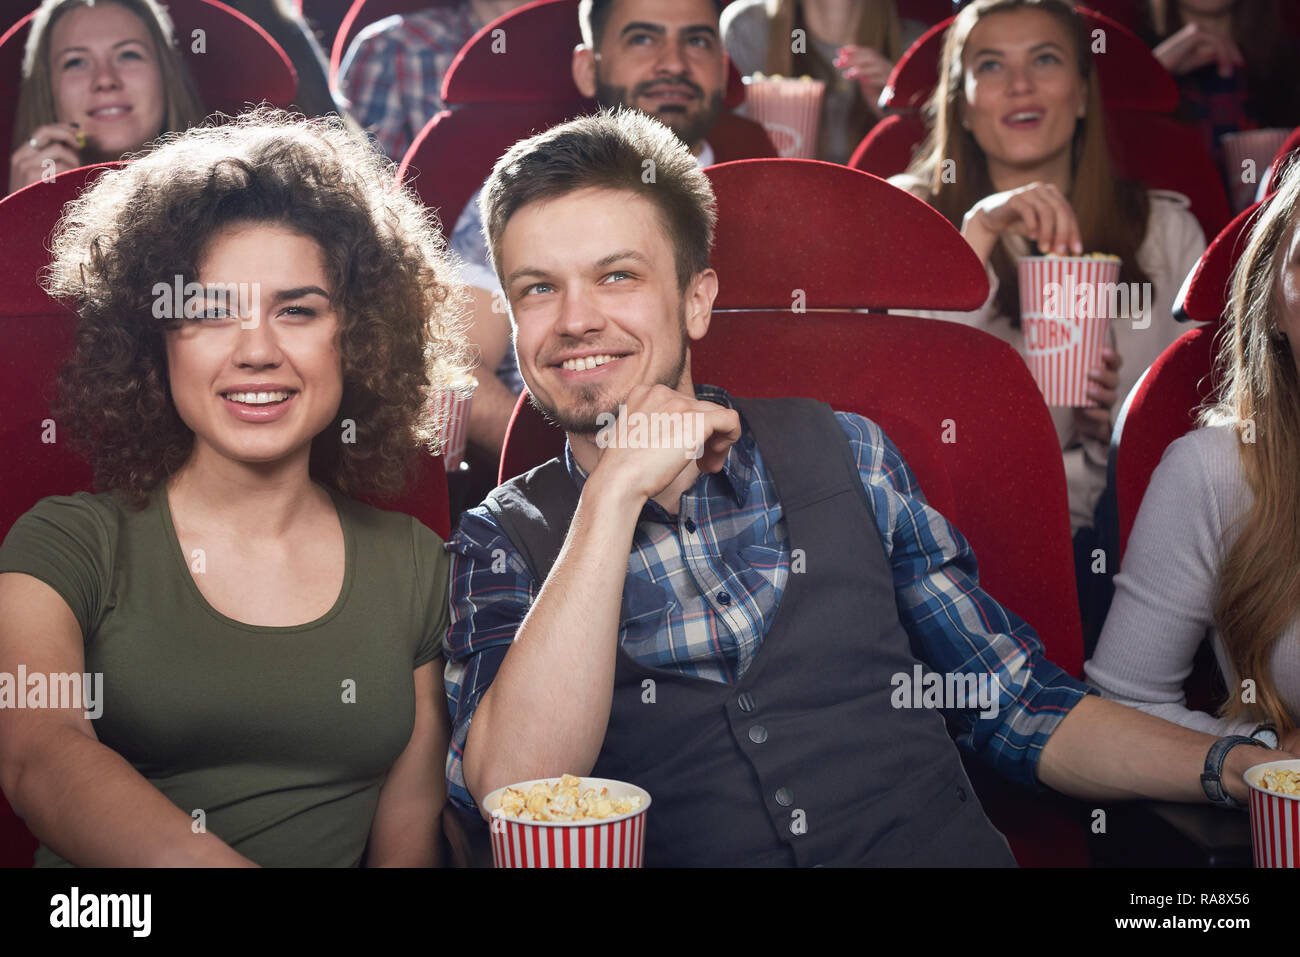 Deux amis l'homme et la fille brune assis ensemble en salle de cinéma et de sourire. Jolie petite amie et beau petit ami eating popcorn et profiter de comédie. Concept de temps libre avec des amis. Banque D'Images